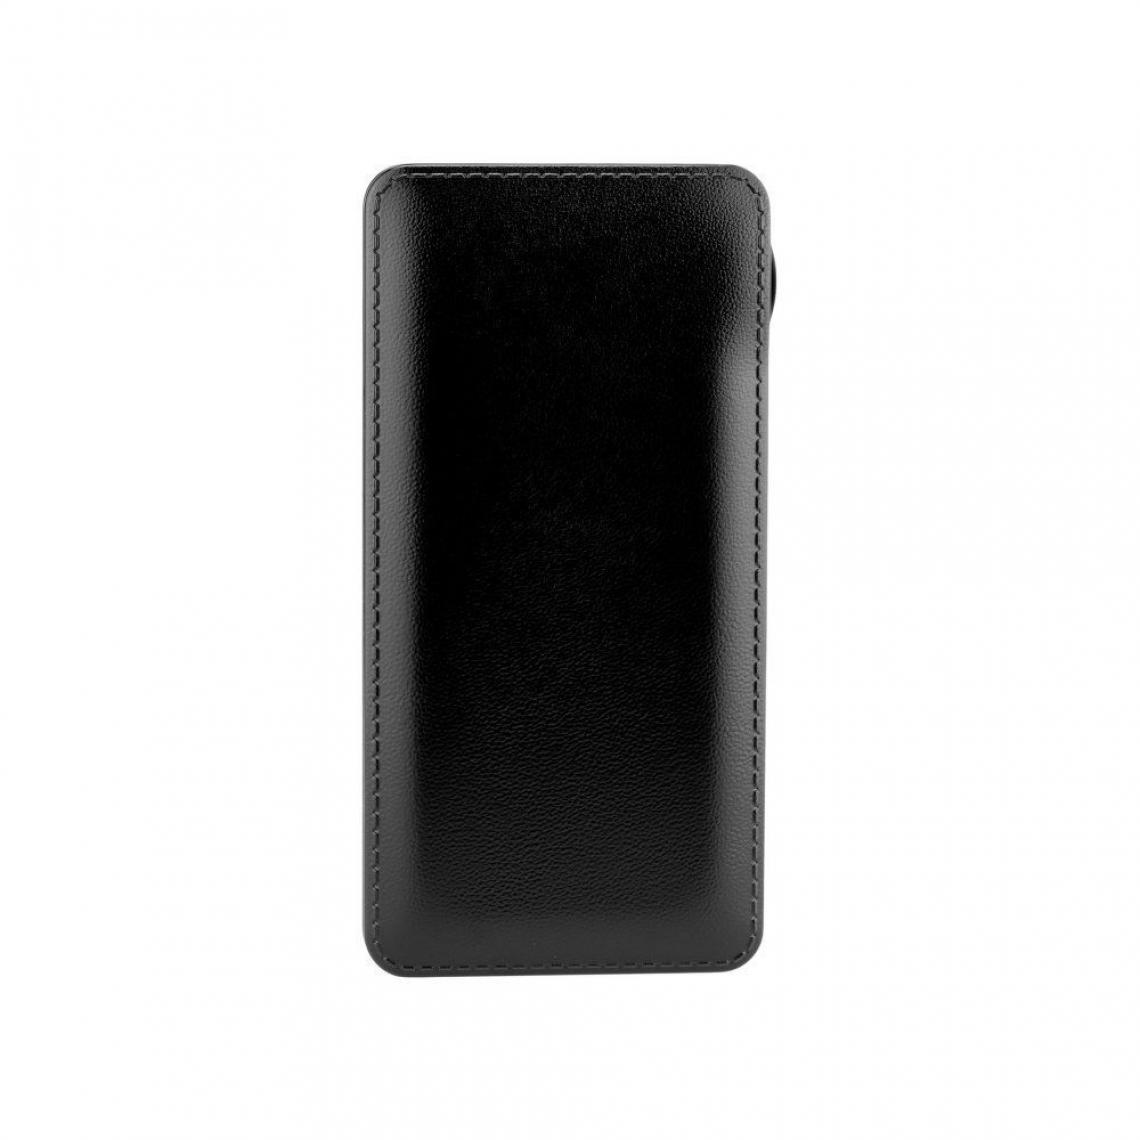 Ozzzo - Chargeur batterie externe 20000 mAh powerbank ozzzo noir pour Xiaomi Mi3 - Autres accessoires smartphone